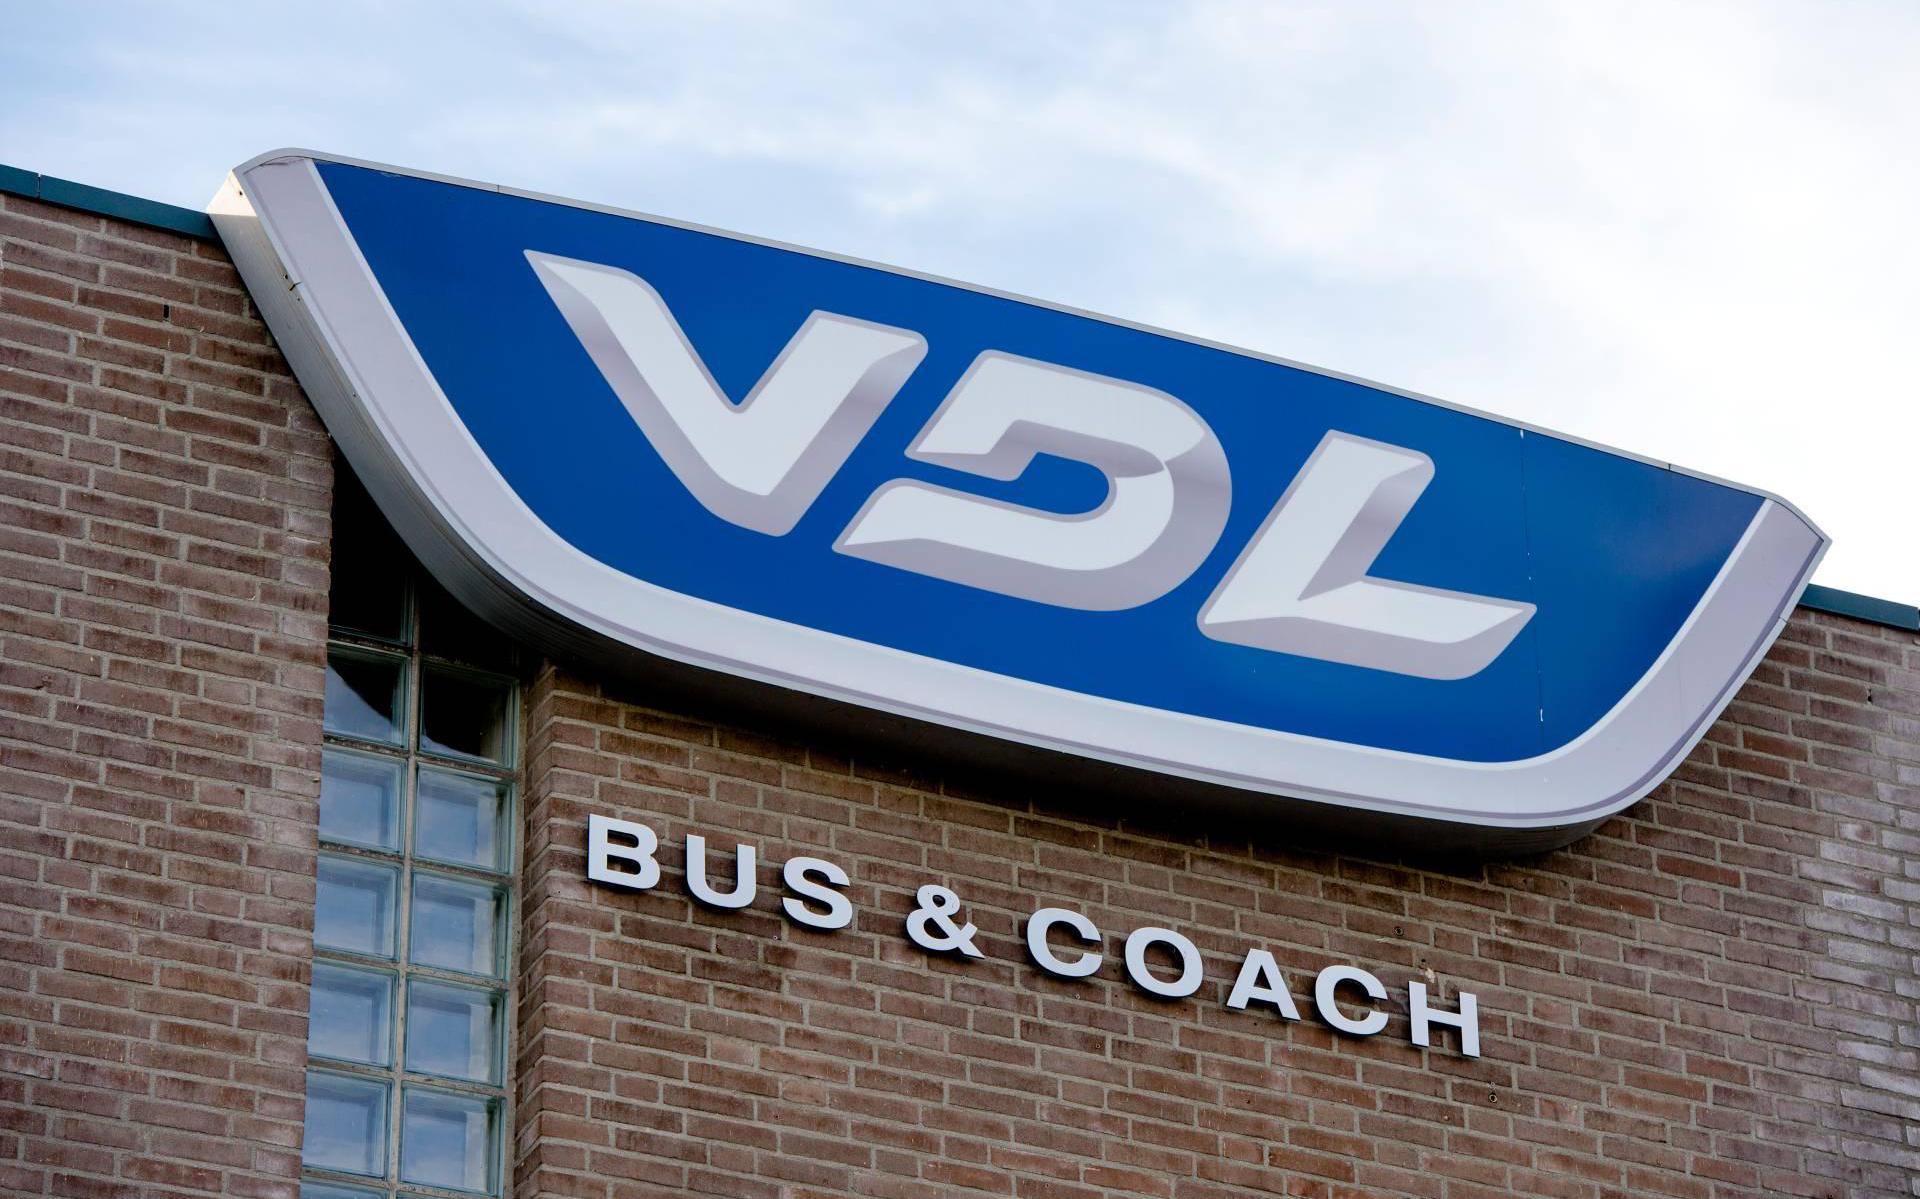 Den norske ordren fra VDL på elbusser er gode nyheter for Heerenveen-anlegget